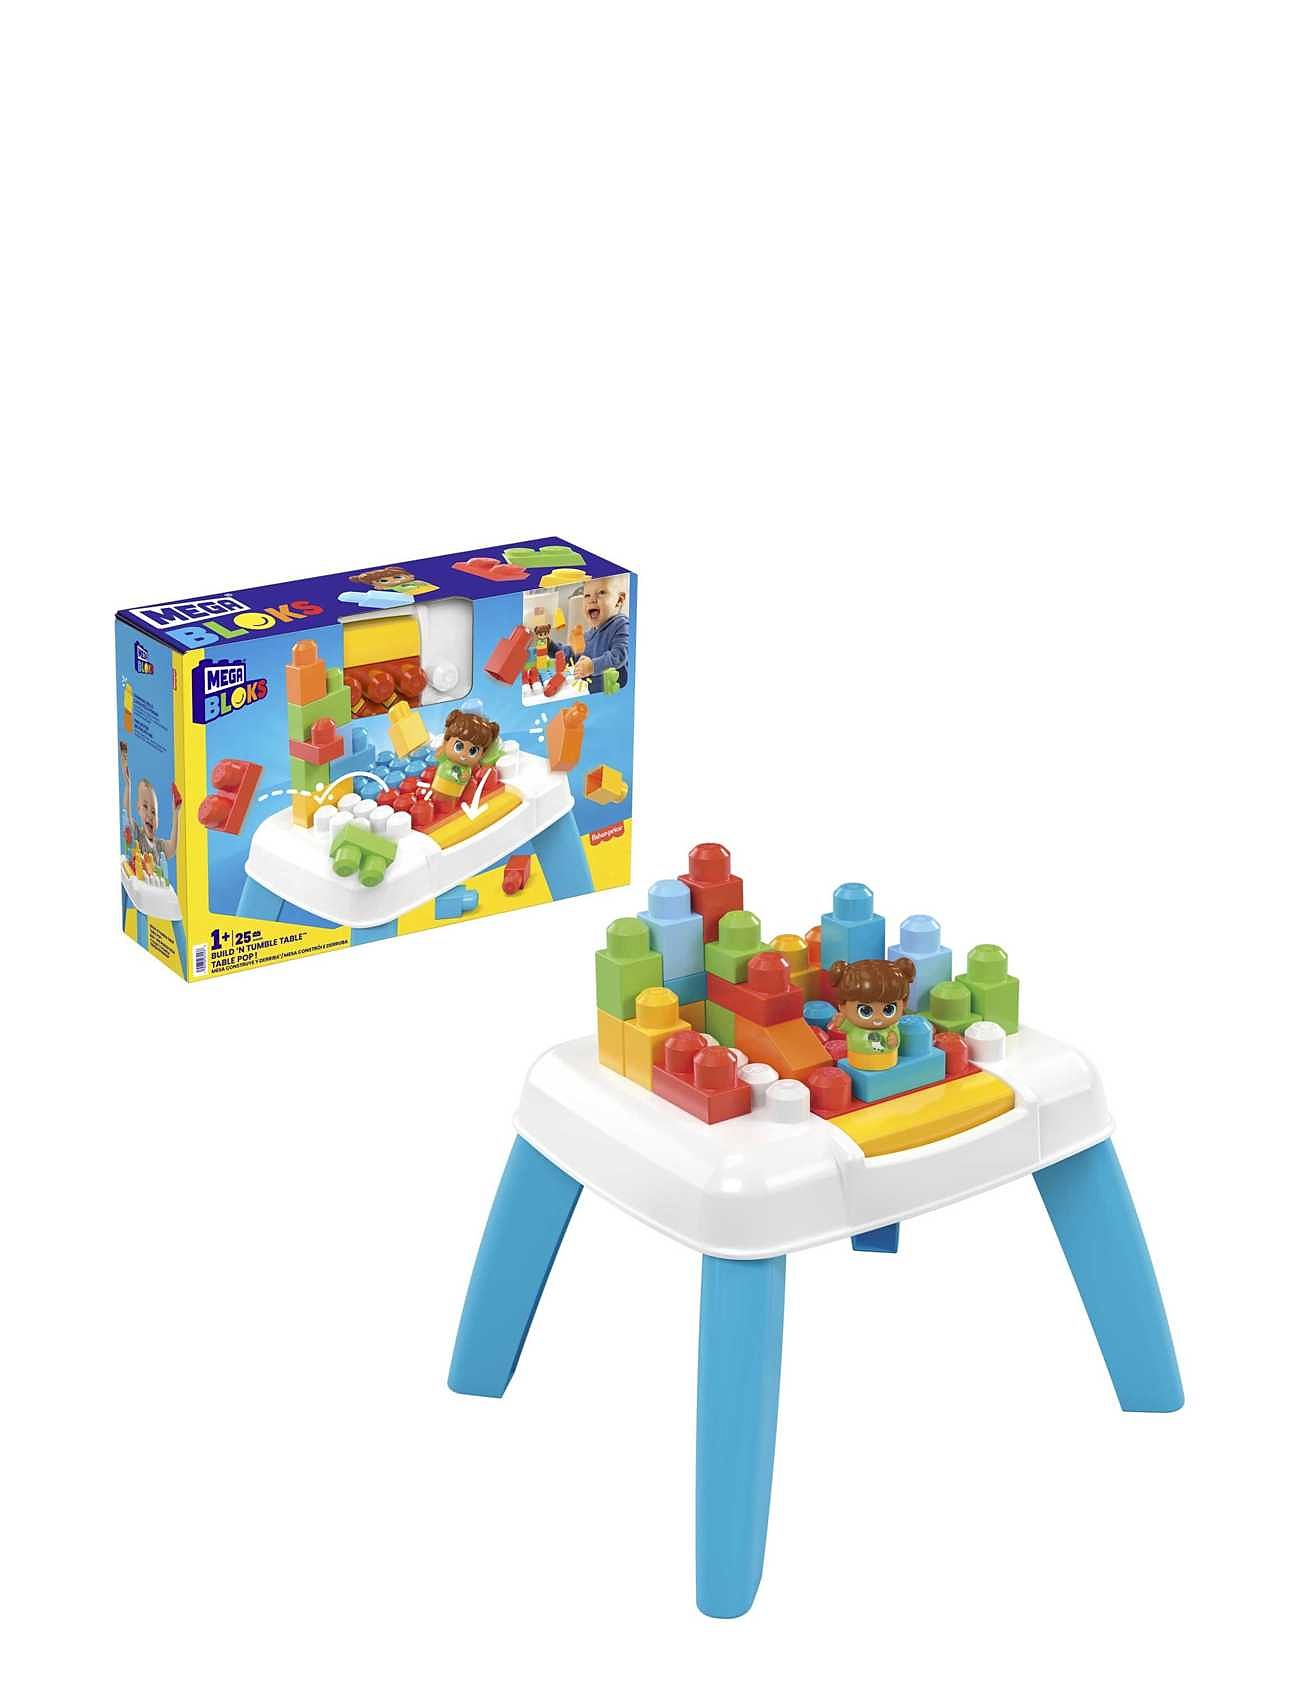 Bloks Build ‘N Tumble Table Toys Baby Toys Educational Toys Activity Toys Multi/patterned MEGA Bloks